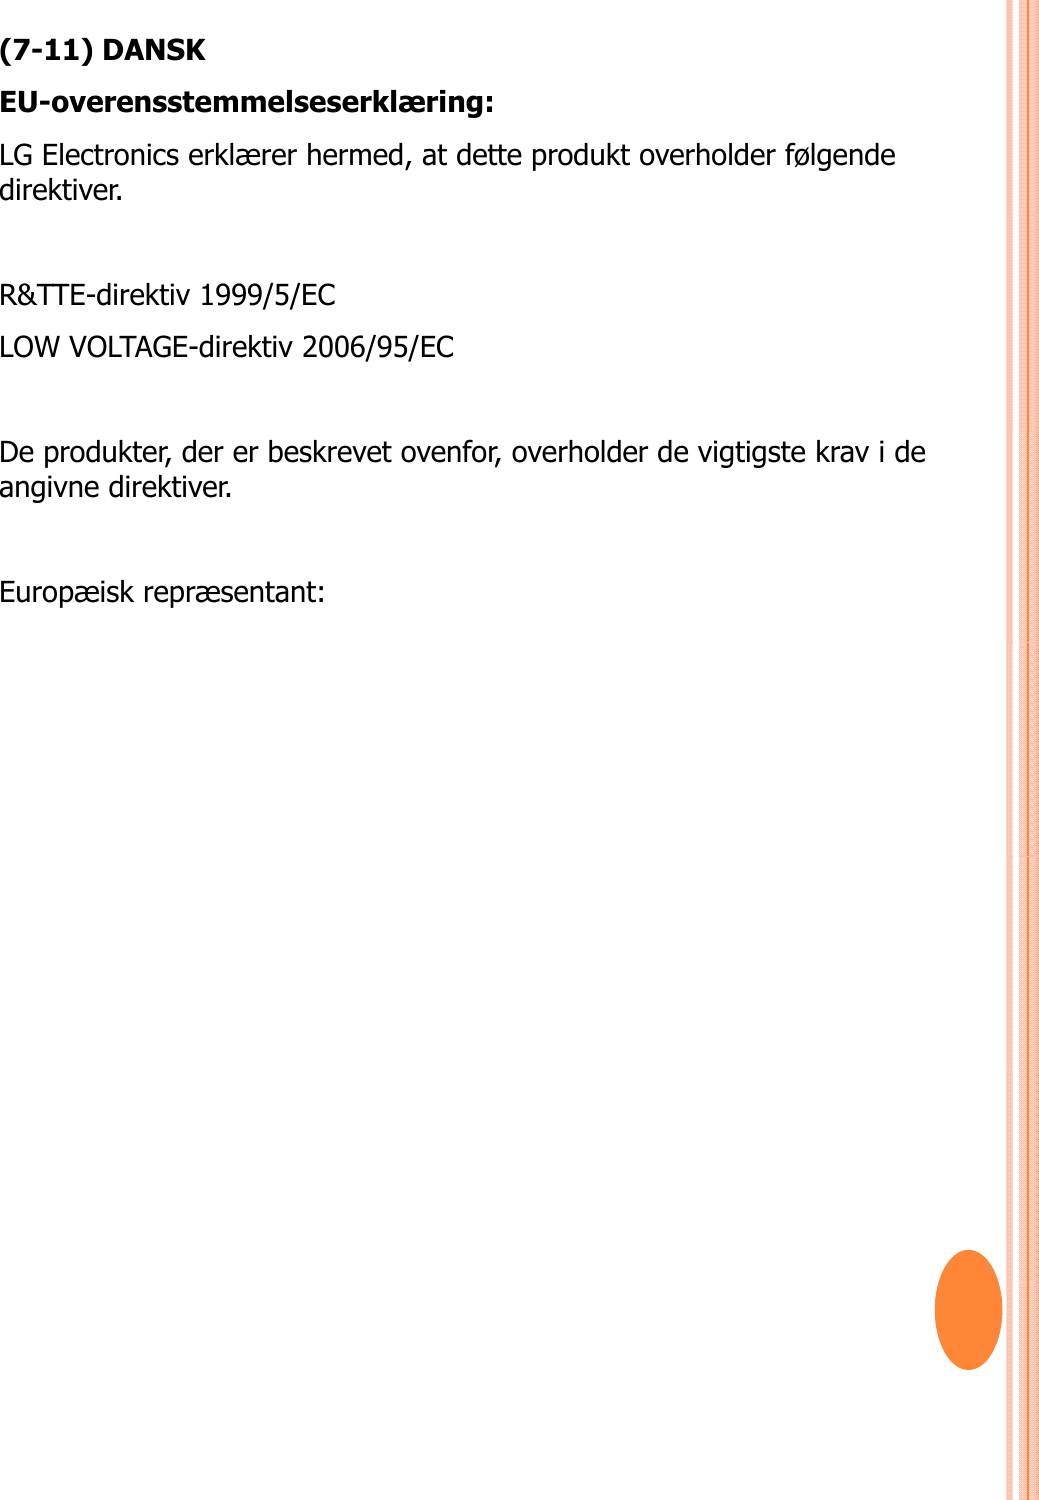 (7-11) DANSKEU-overensstemmelseserklæring: LG Electronics erklærer hermed, at dette produkt overholder følgende direktiver. R&amp;TTE-direktiv 1999/5/EC LOW VOLTAGE-direktiv 2006/95/EC De produkter, der er beskrevet ovenfor, overholder de vigtigste krav i de angivne direktiver.Europæisk repræsentant: 